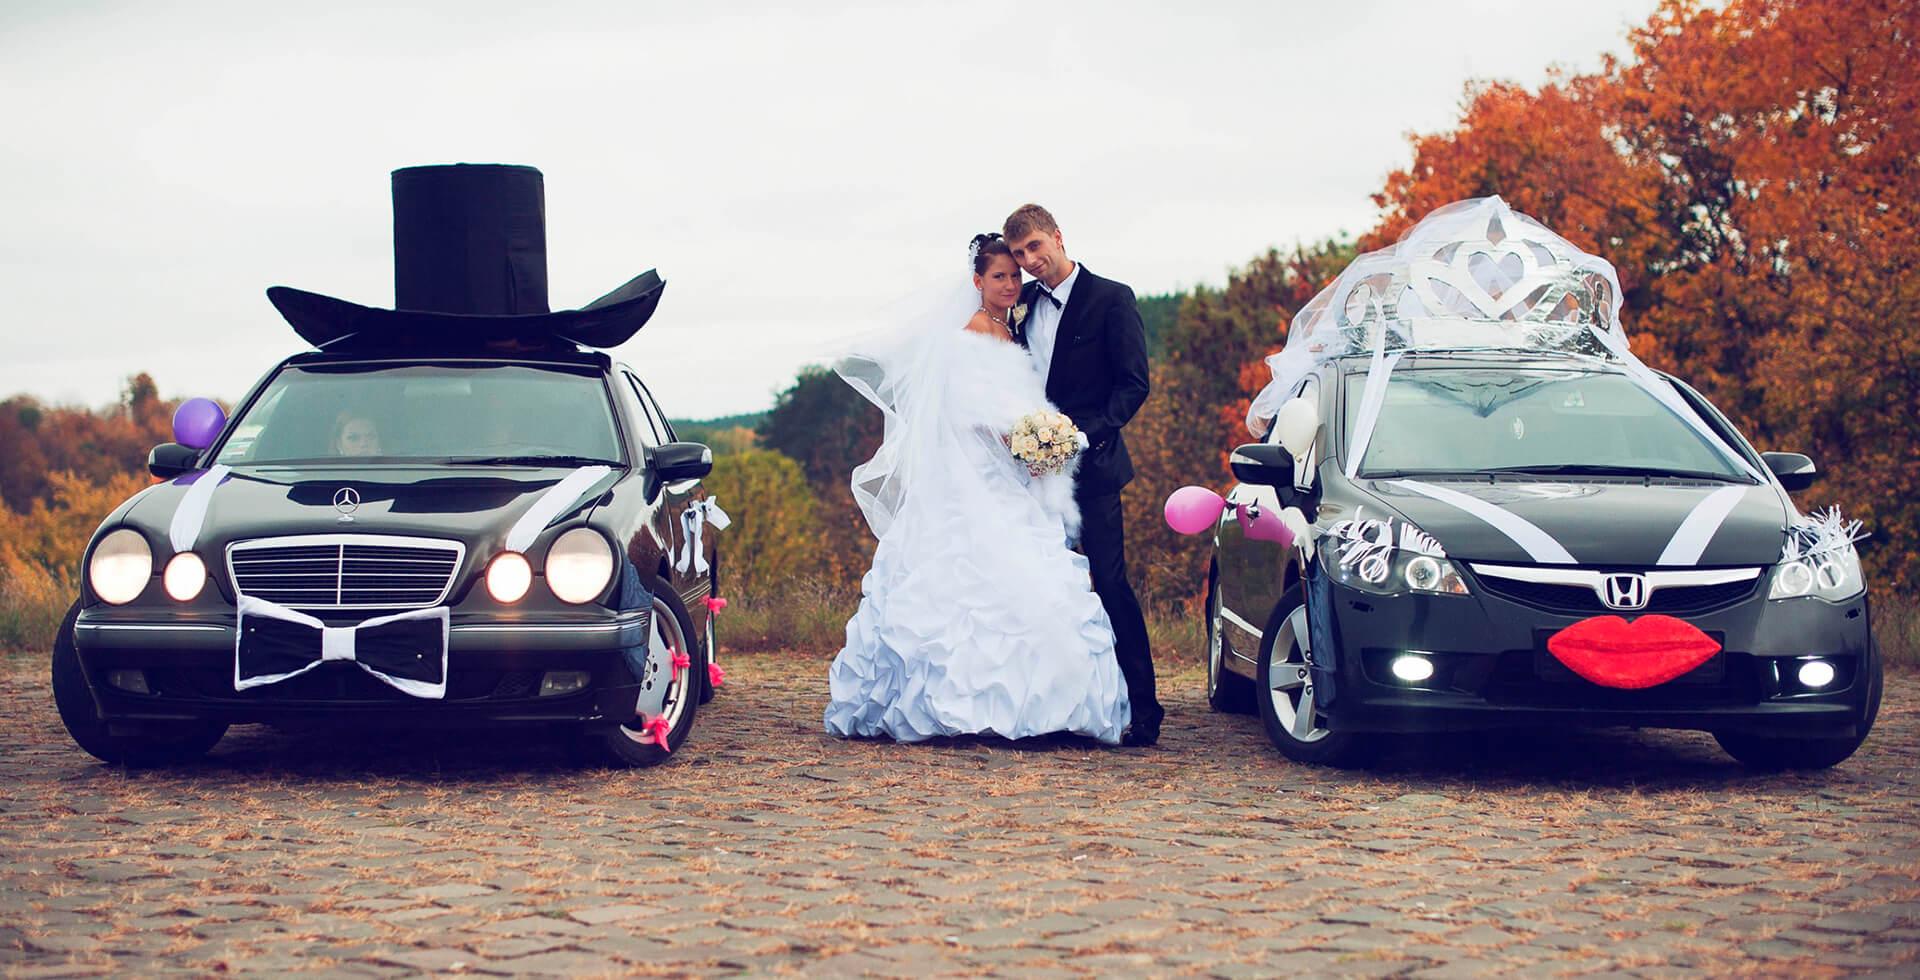 Свадебные украшения на машину своими руками - 66 фото